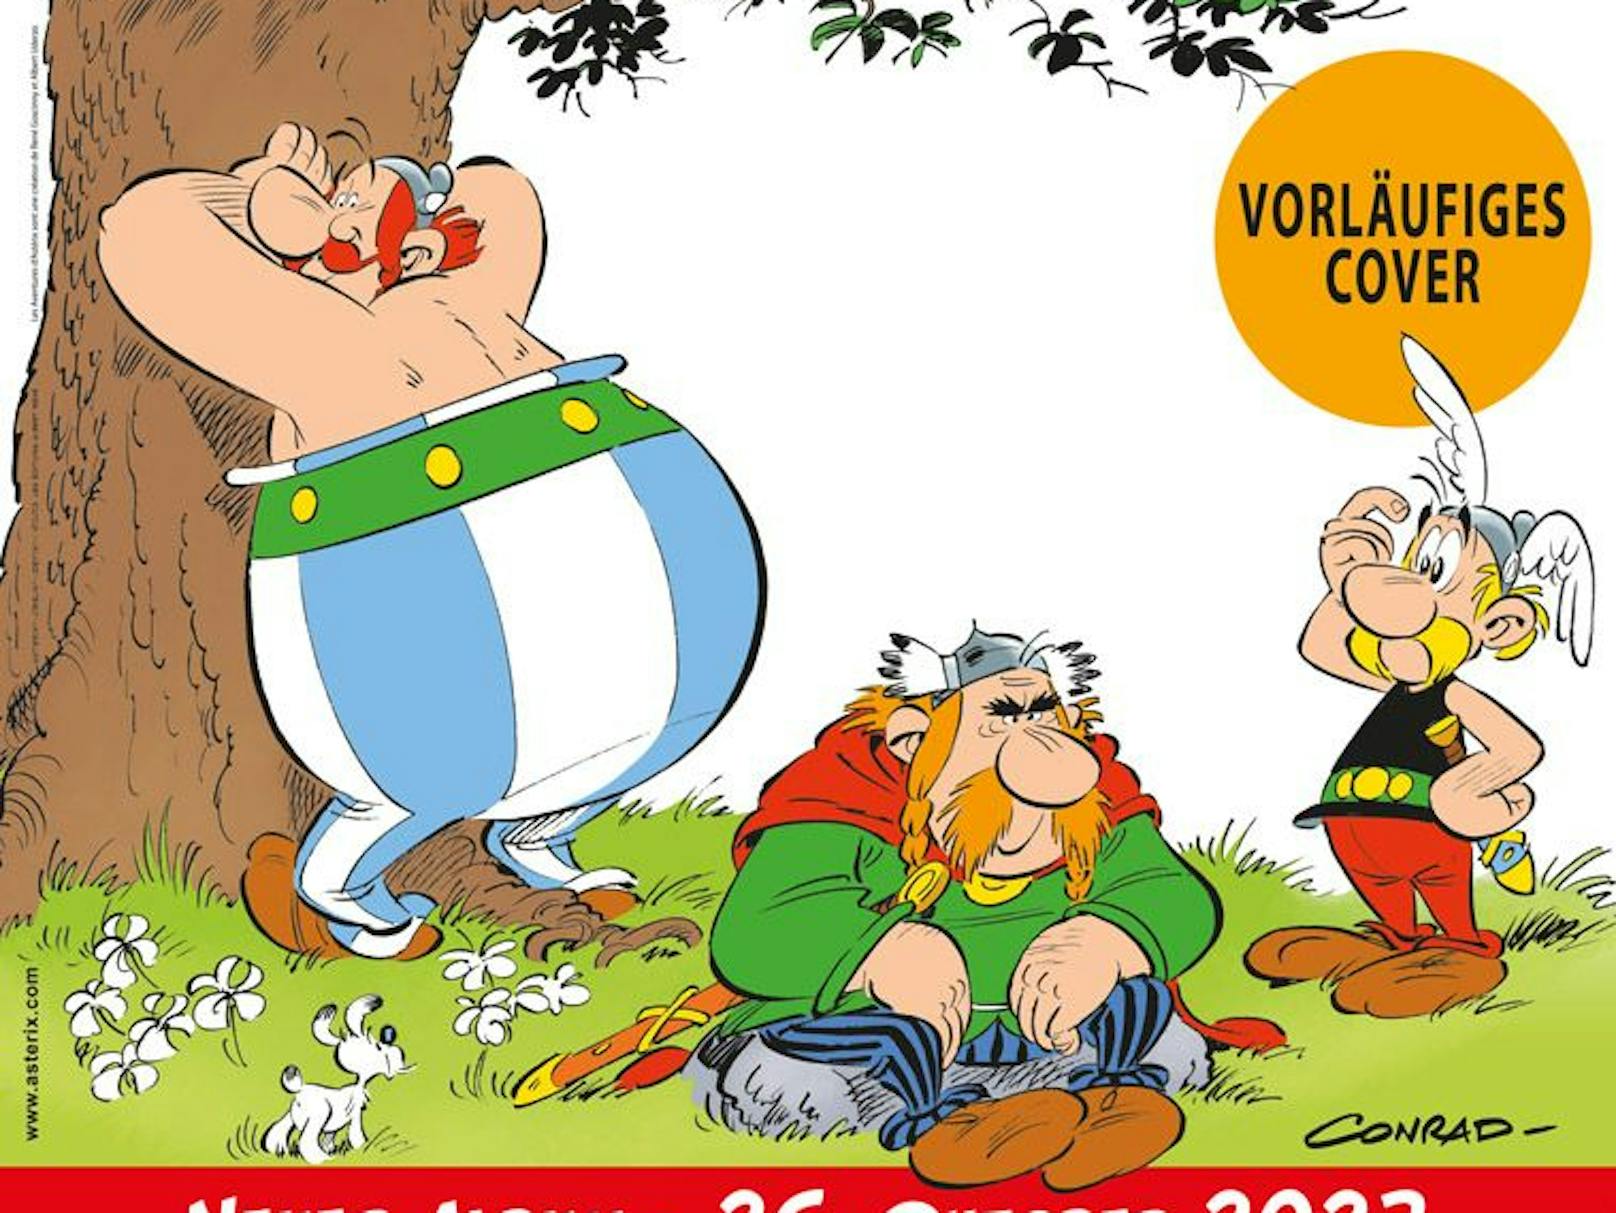 Am Nationalfeiertag diesen Jahres erscheint der 40. Albumband von "Asterix". Der Titel: "Die weisse Iris".